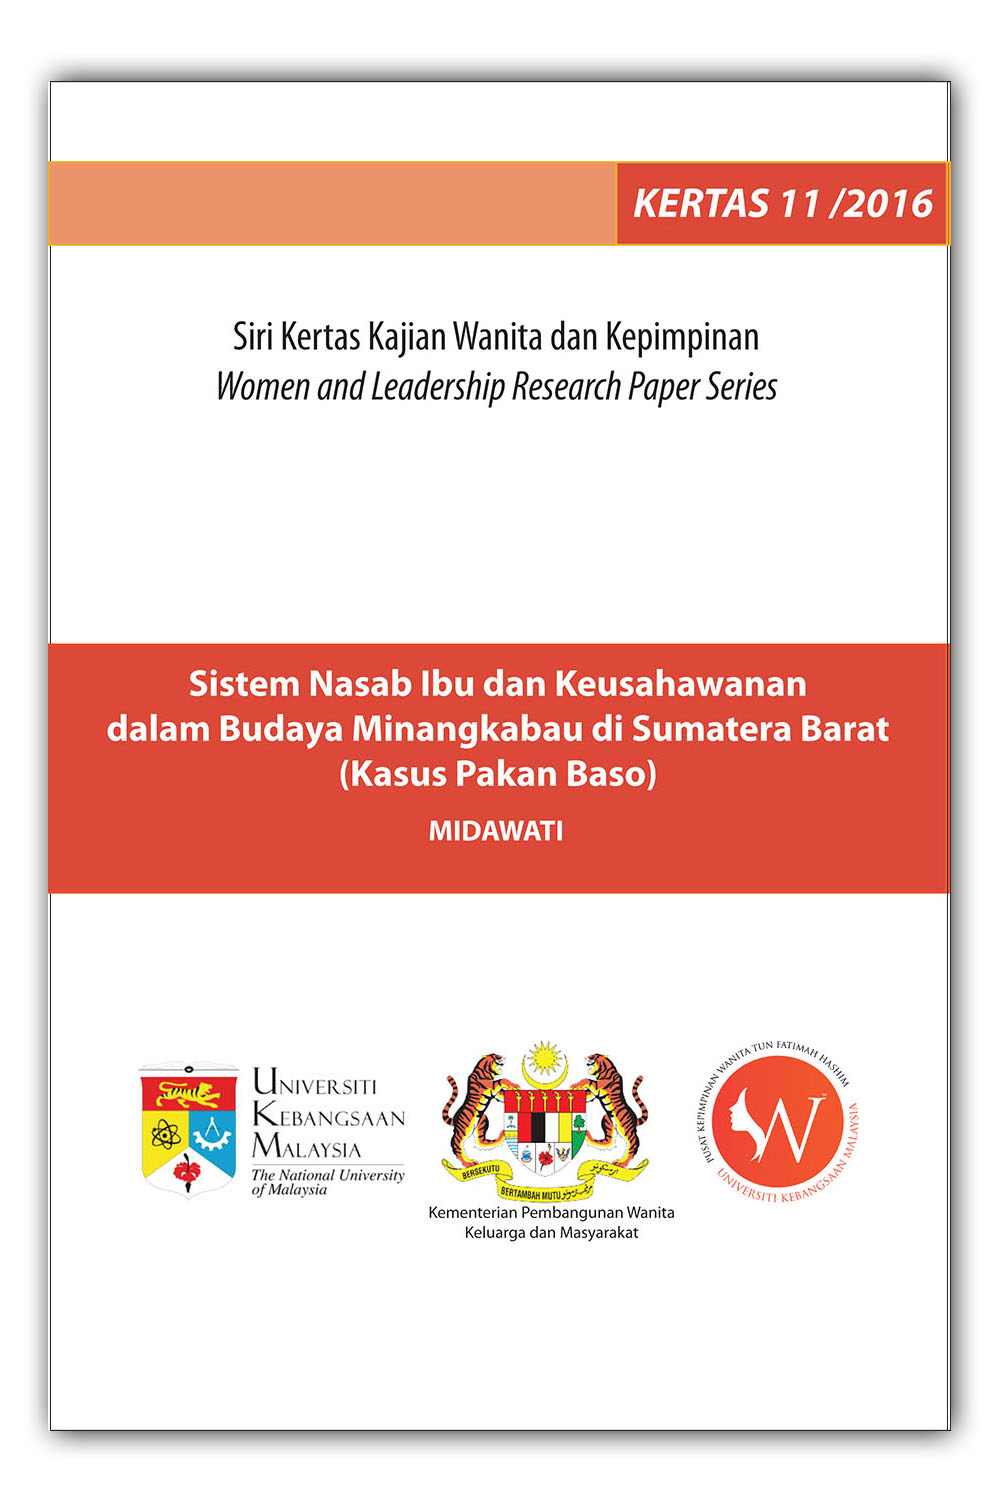 Sistem Nasab Ibu dan Keusahawanan dalam Budaya Minangkabau di Sumatera Barat (Kasus Pakan Baso)